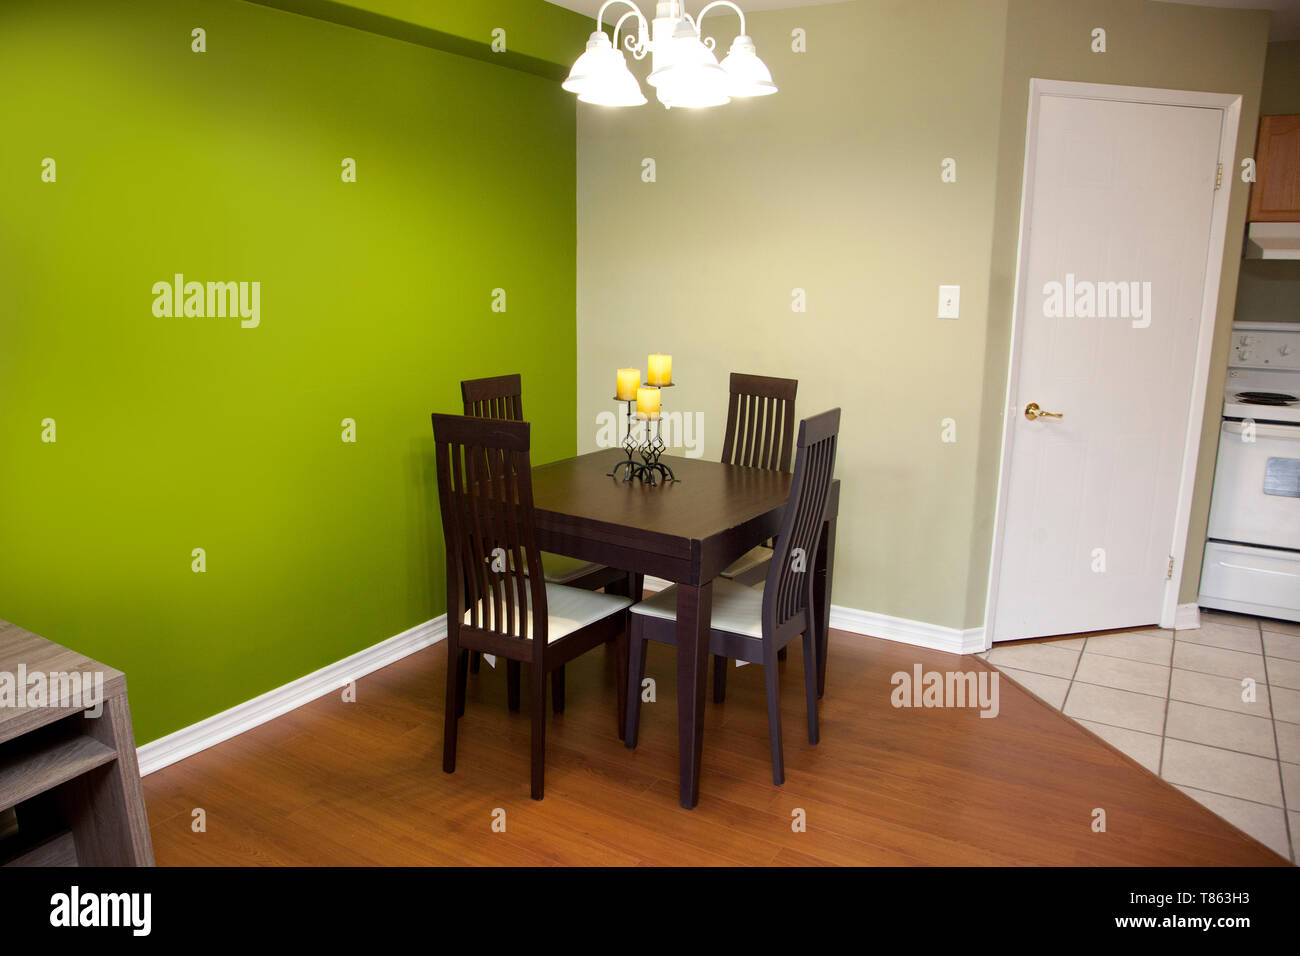 Grüne Wände mit einem dunklen Holz Tisch und Stuhl für vier in